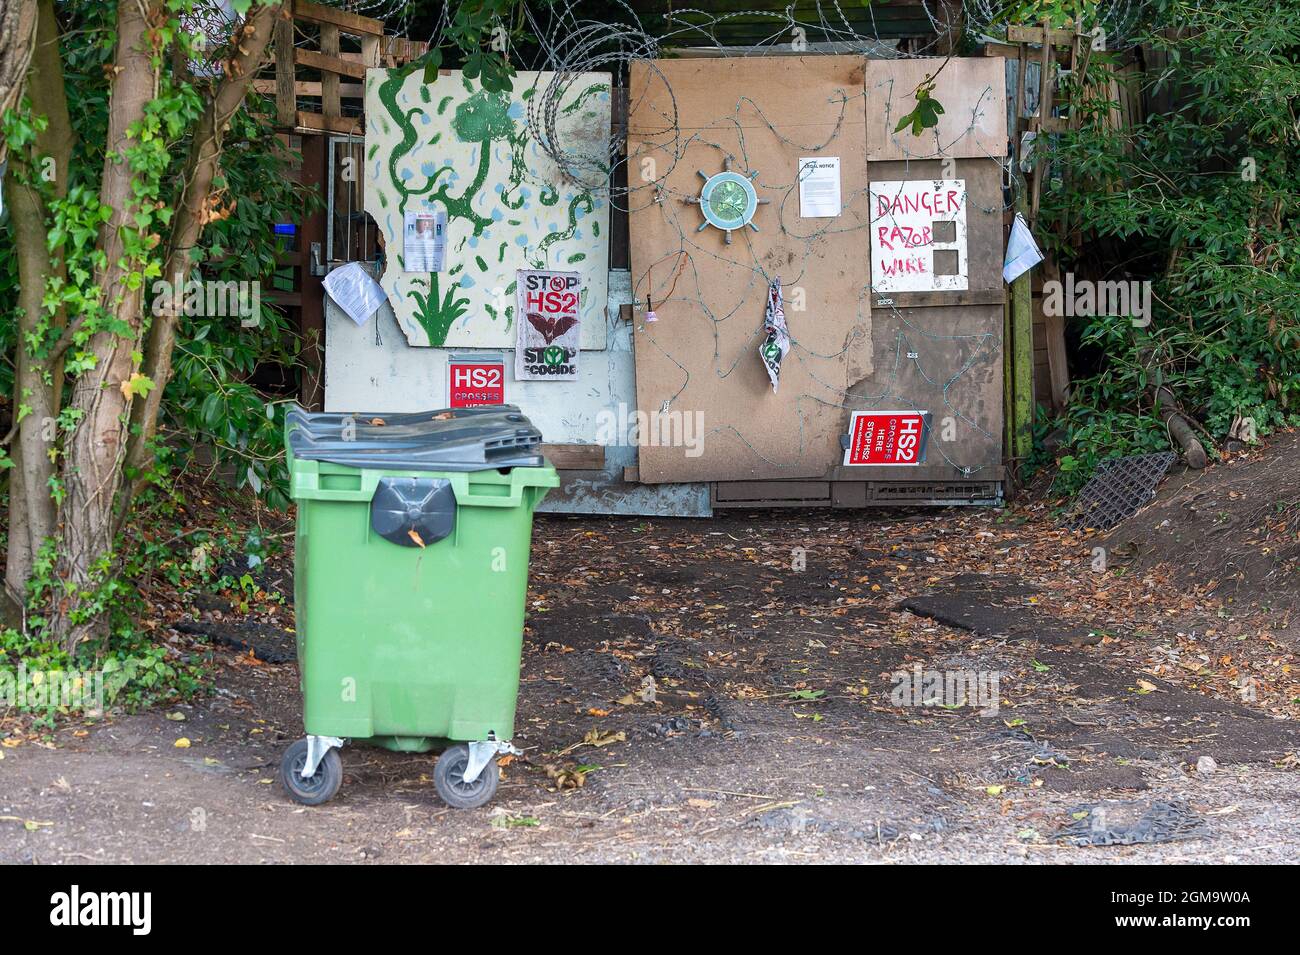 Wendover, Aylesbury, Großbritannien. September 2021. Der Buckinghamshire Council führt Müllsammlungen aus dem Anti-HS2-Kriegslager Wendover Active Resistance durch, in dem Umweltaktivisten seit über einem Jahr leben. Quelle: Maureen McLean/Alamy Stockfoto